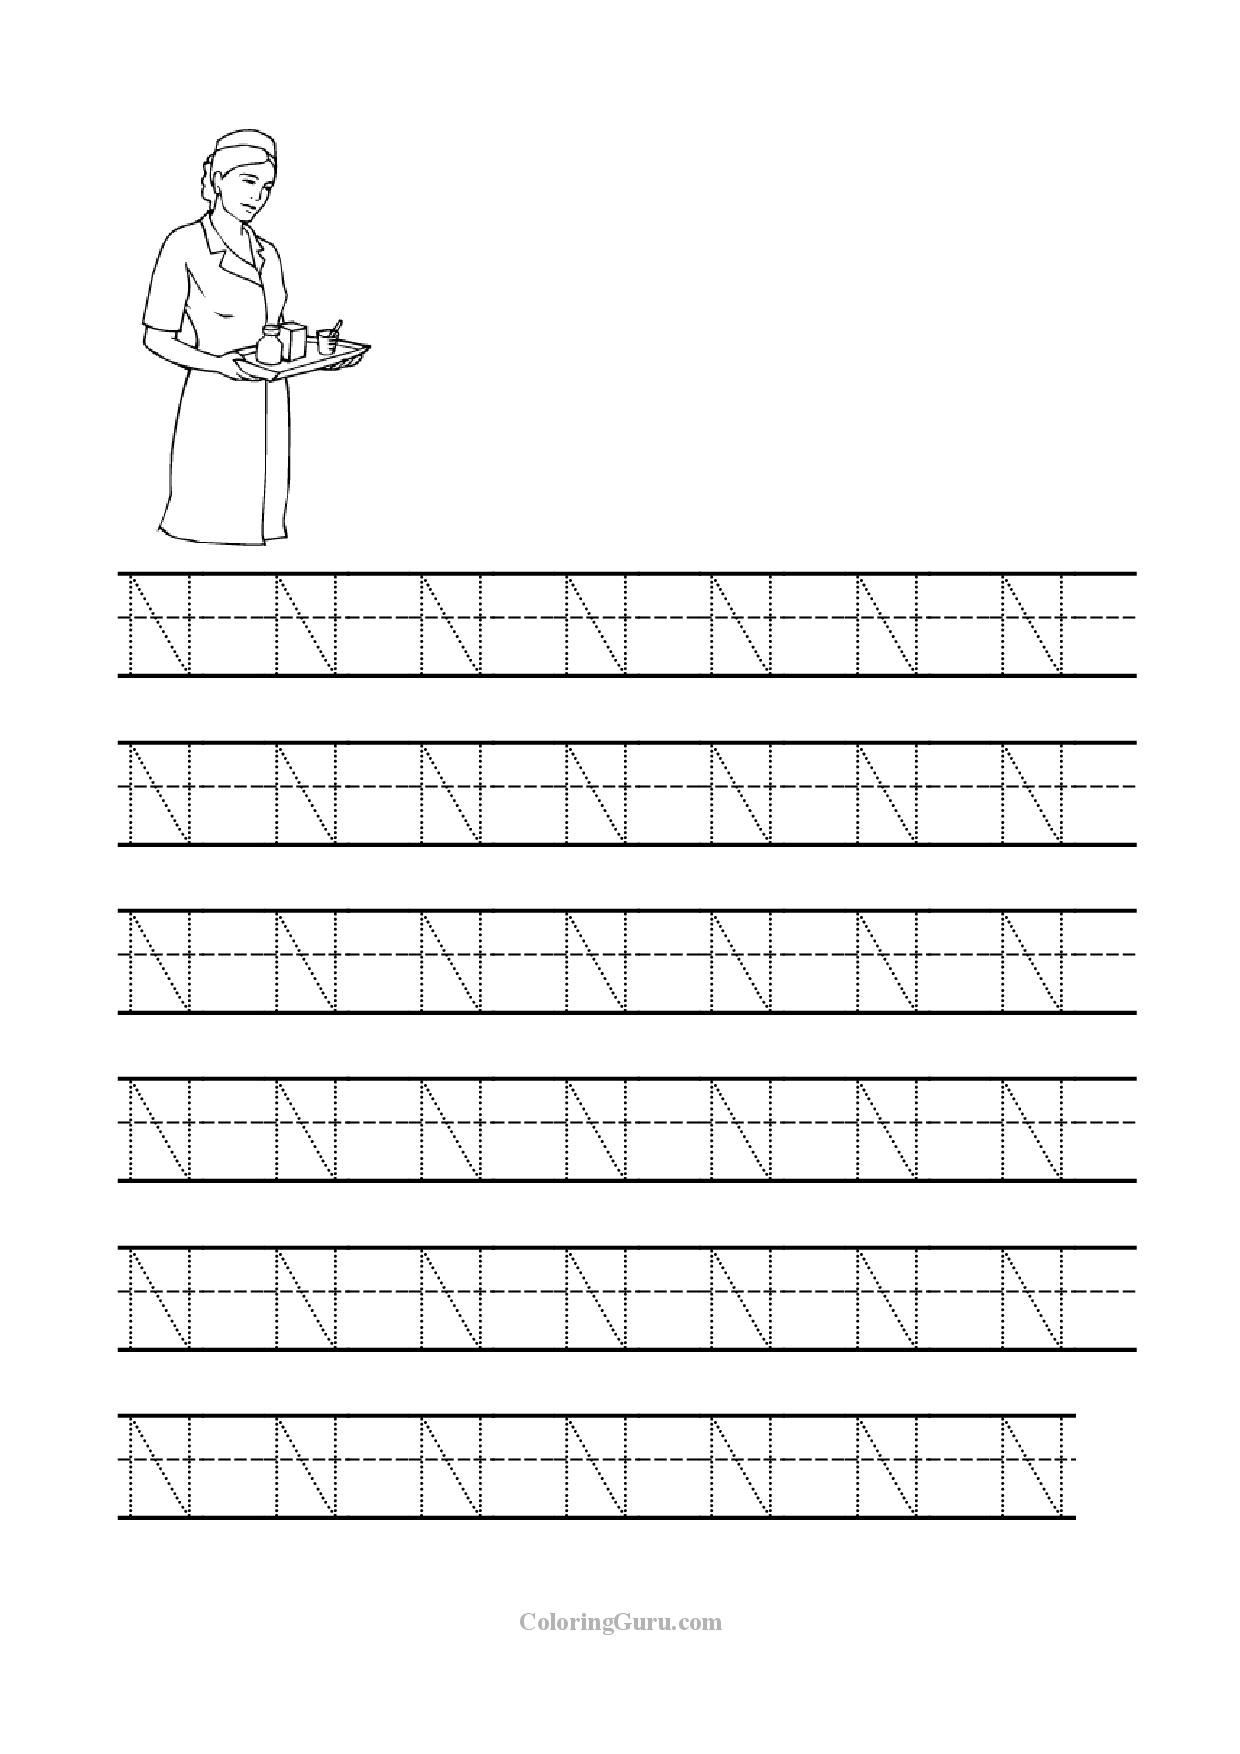 Letter N Tracing Worksheets Preschool Free Printable Tracing Letter N Worksheets for Preschool